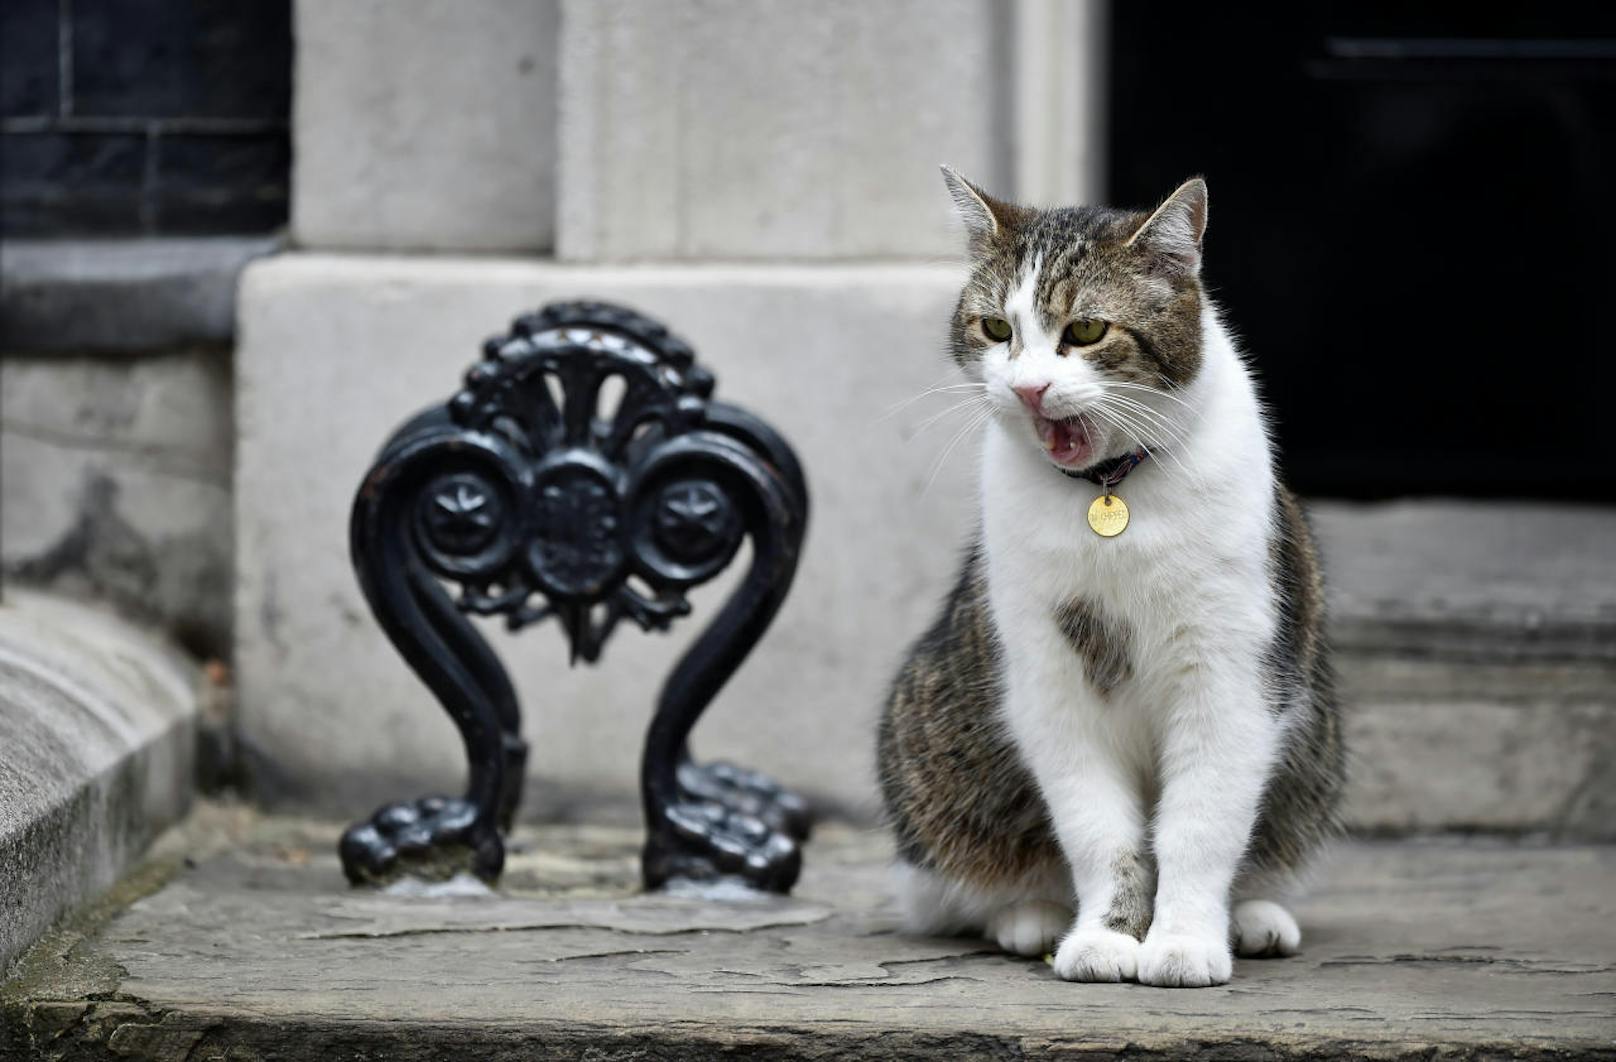 Auf der anderen Seite von London macht es sich "Larry", die Downing-Street-Katze, auf den Stufen zum Büro der britischen Premierministerin gemütlich.